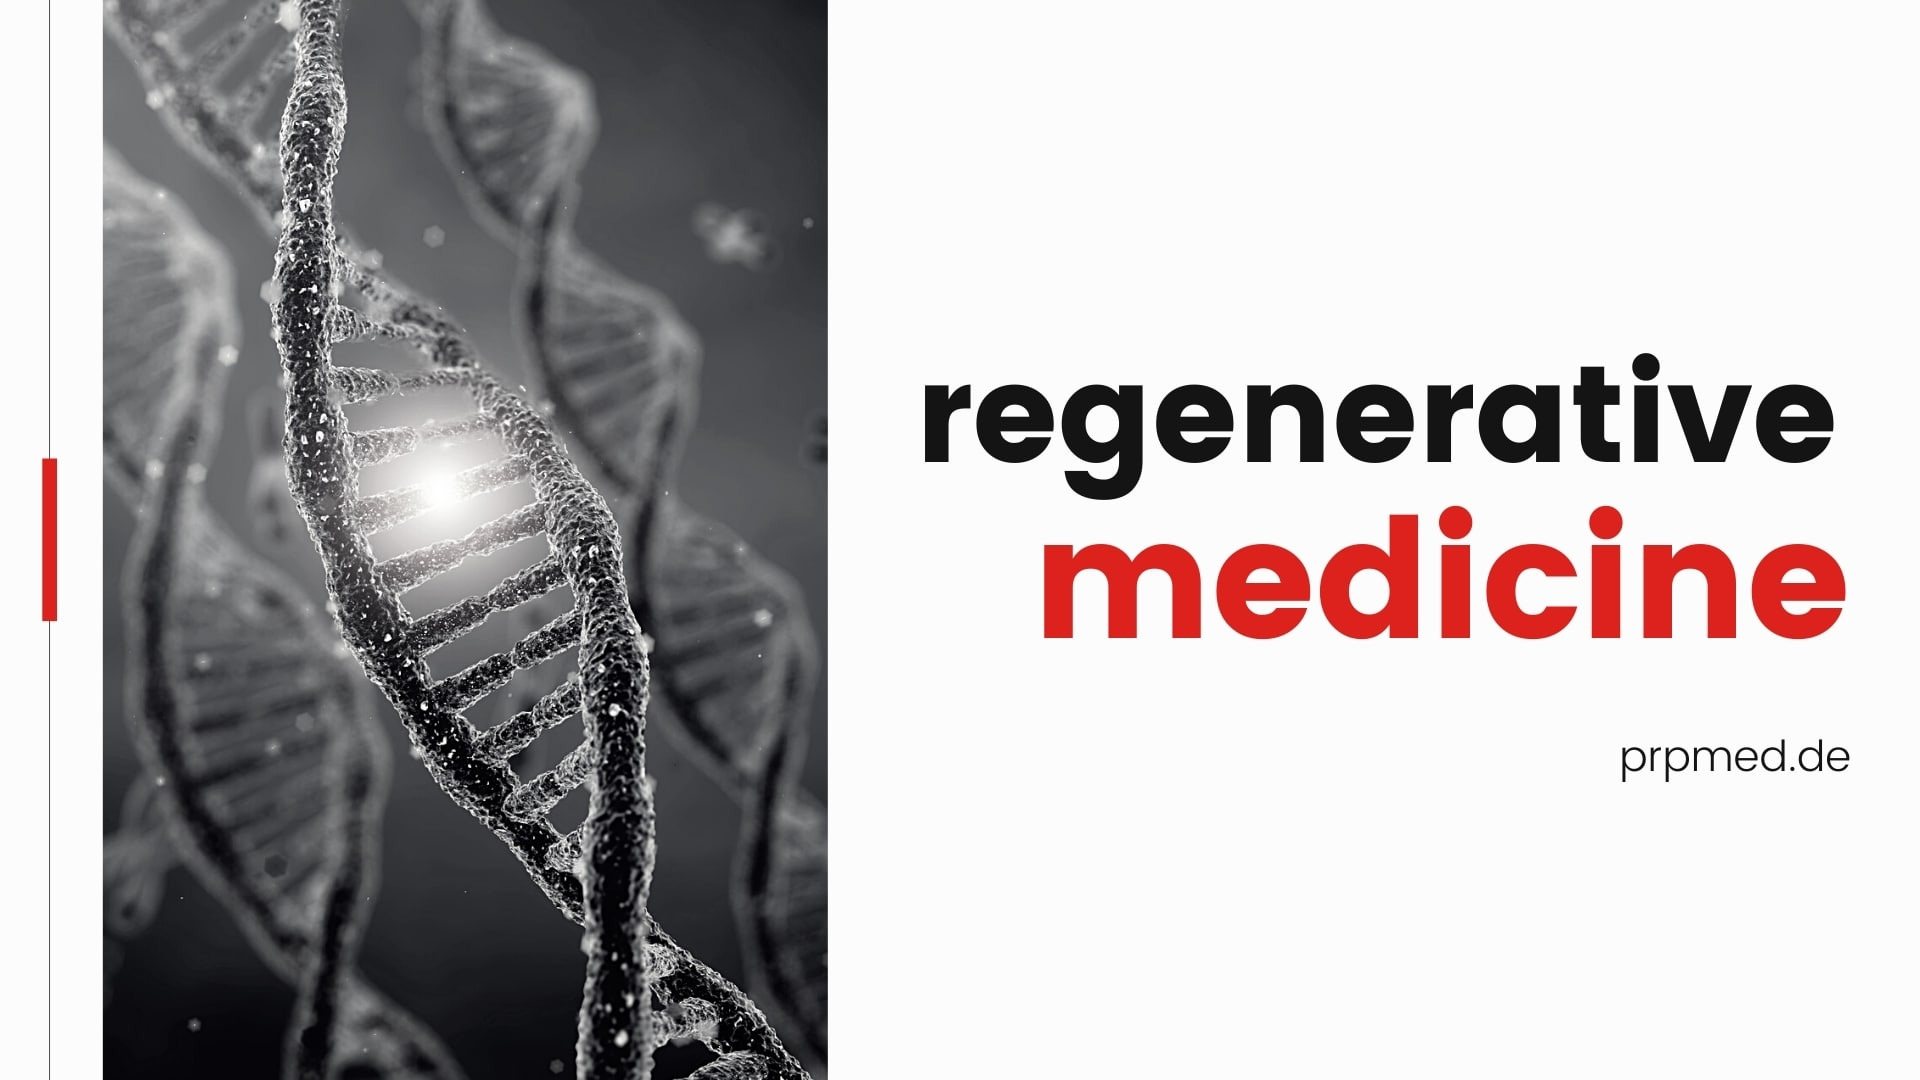 Ce este medicina regenerativă?